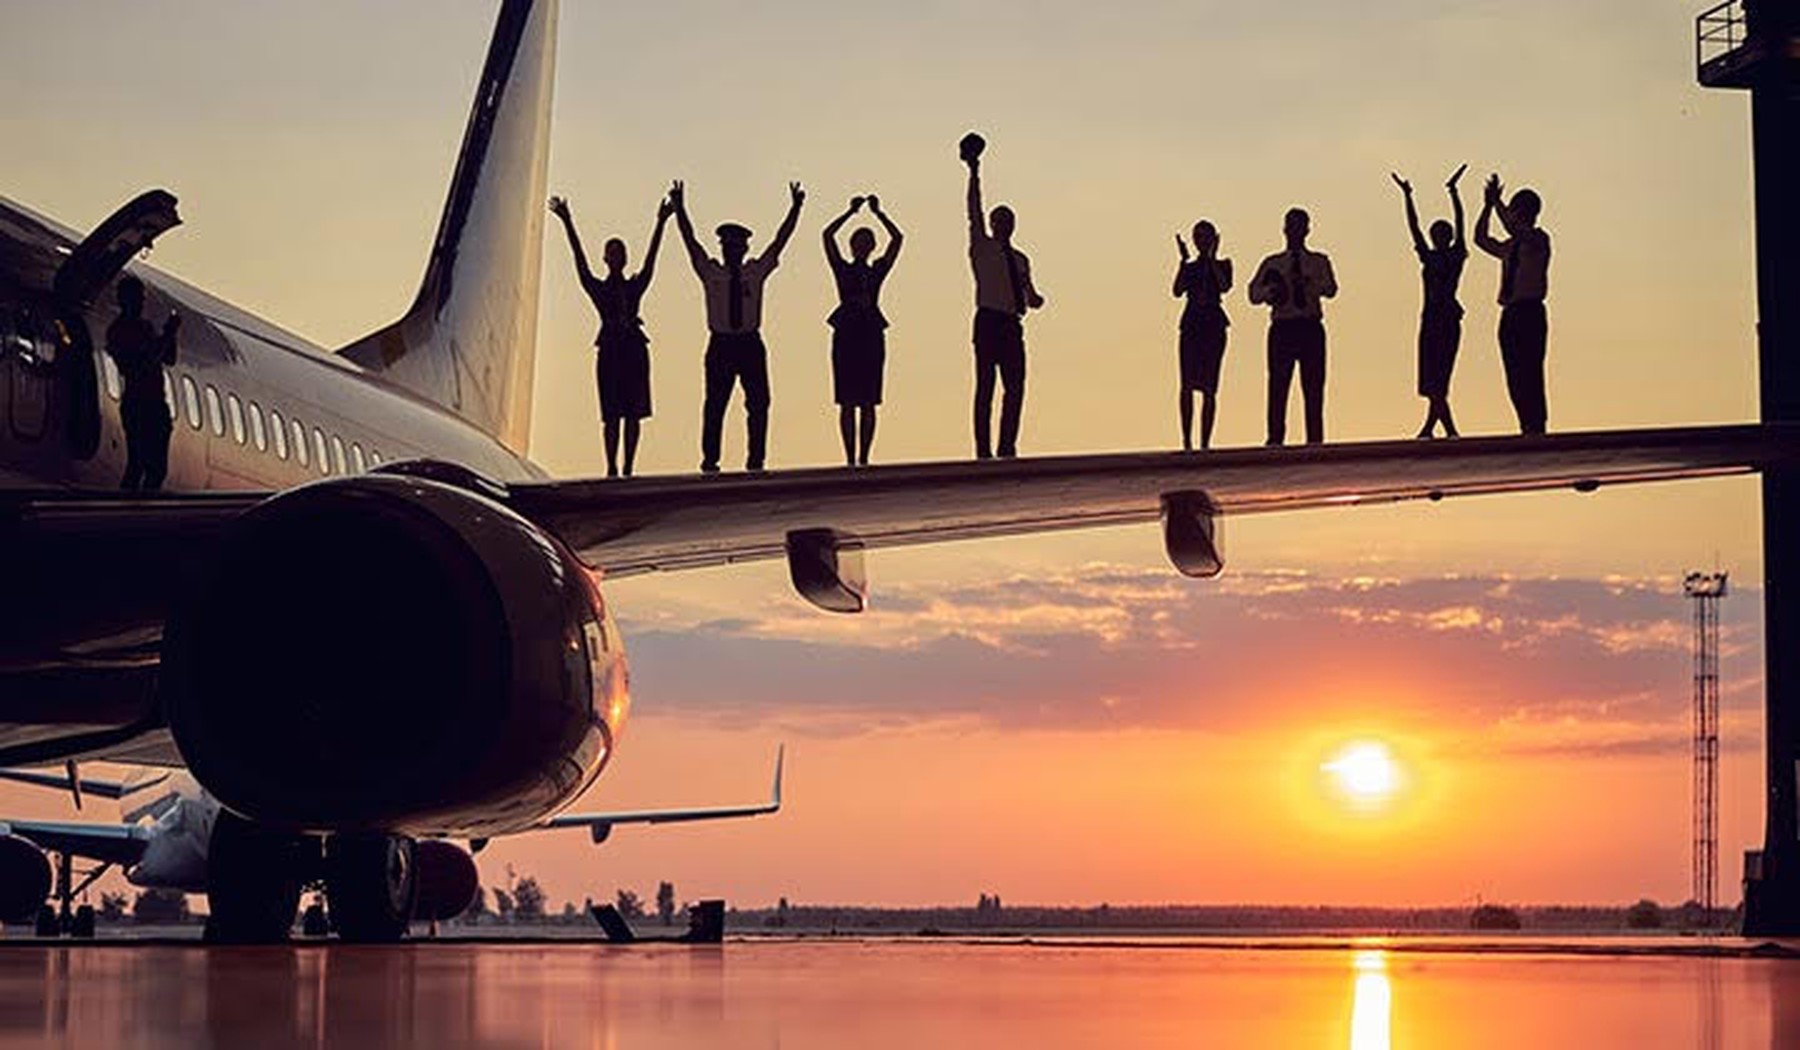 Een vliegtuig met zonsondergang, met de silhouetten van mensen die vrolijk op de vleugel staan